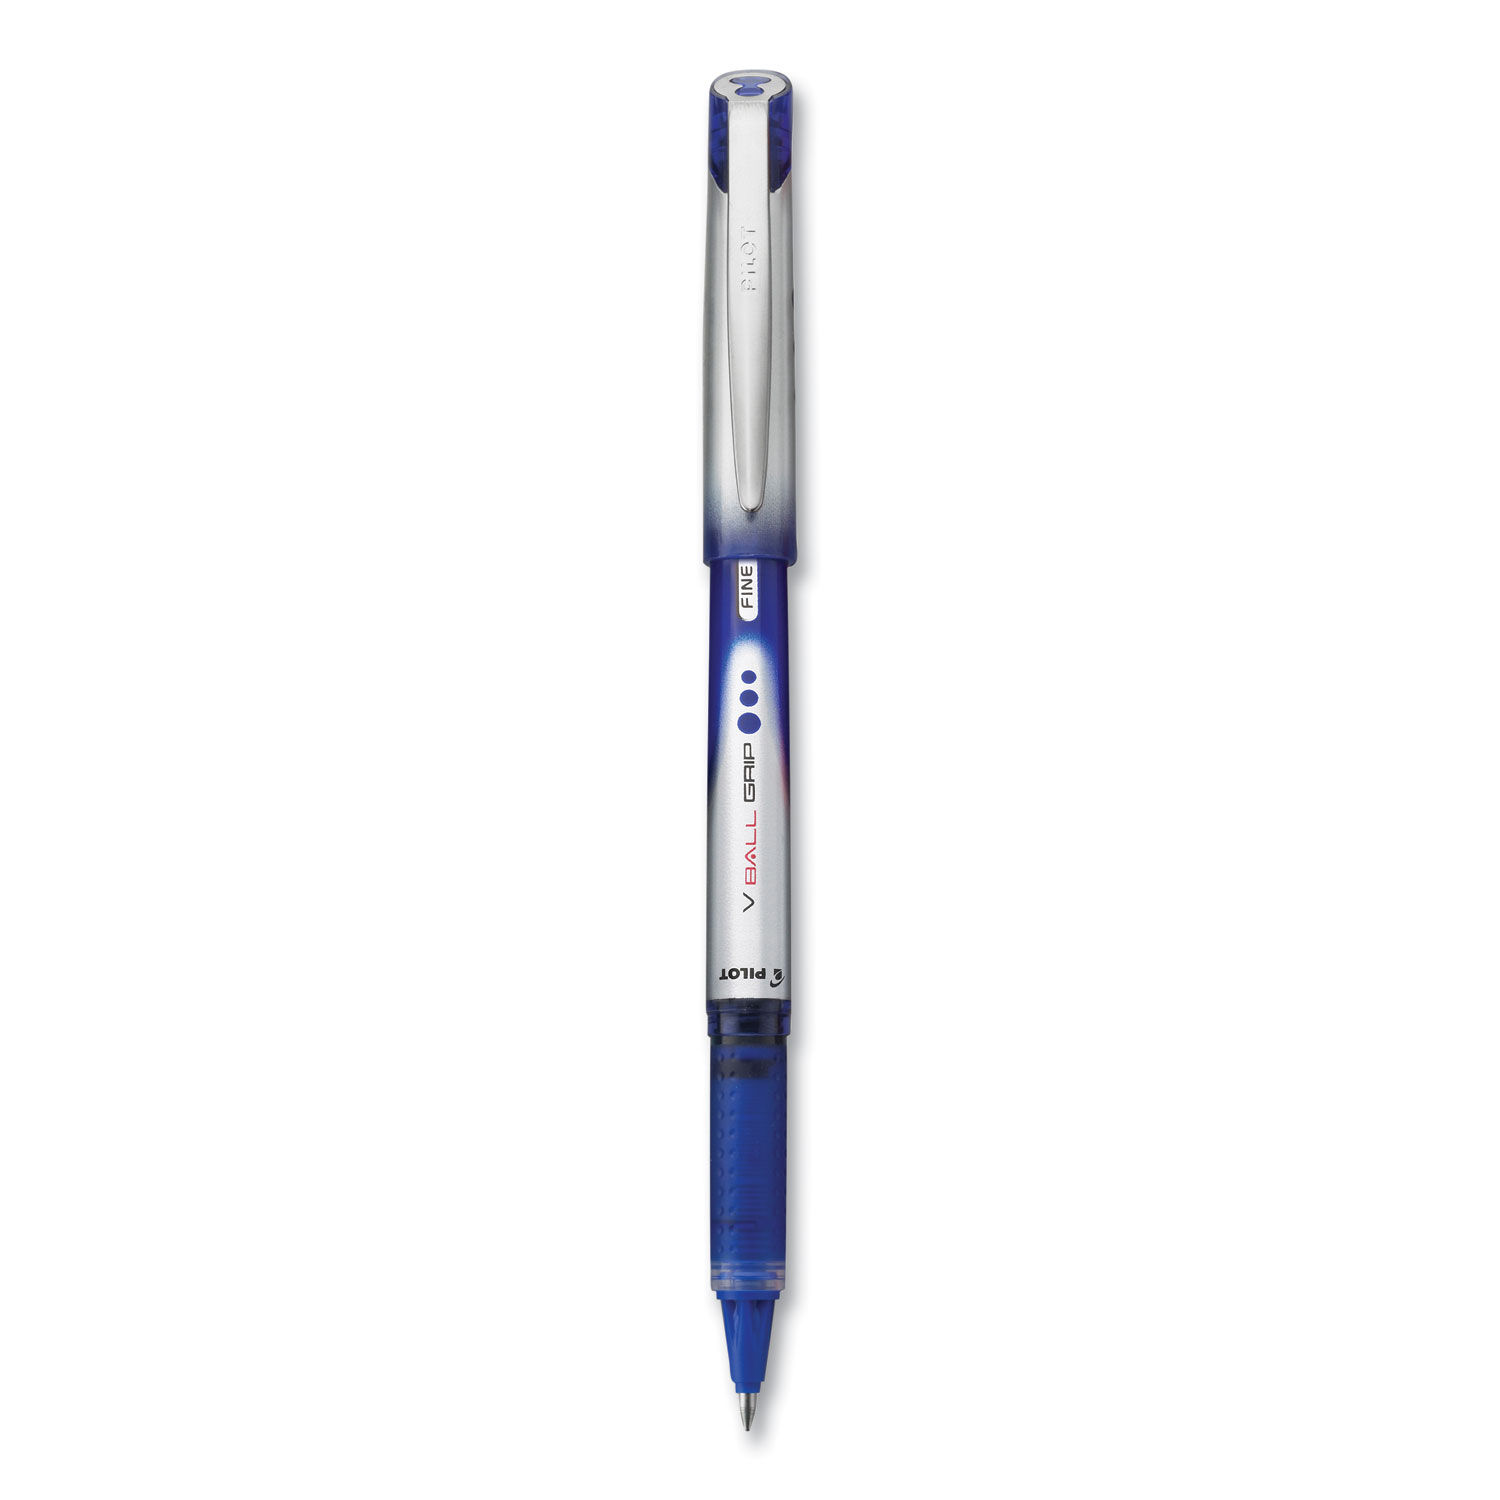 VBall Grip Liquid Ink Roller Ball Pen by Pilotandreg; PIL35571